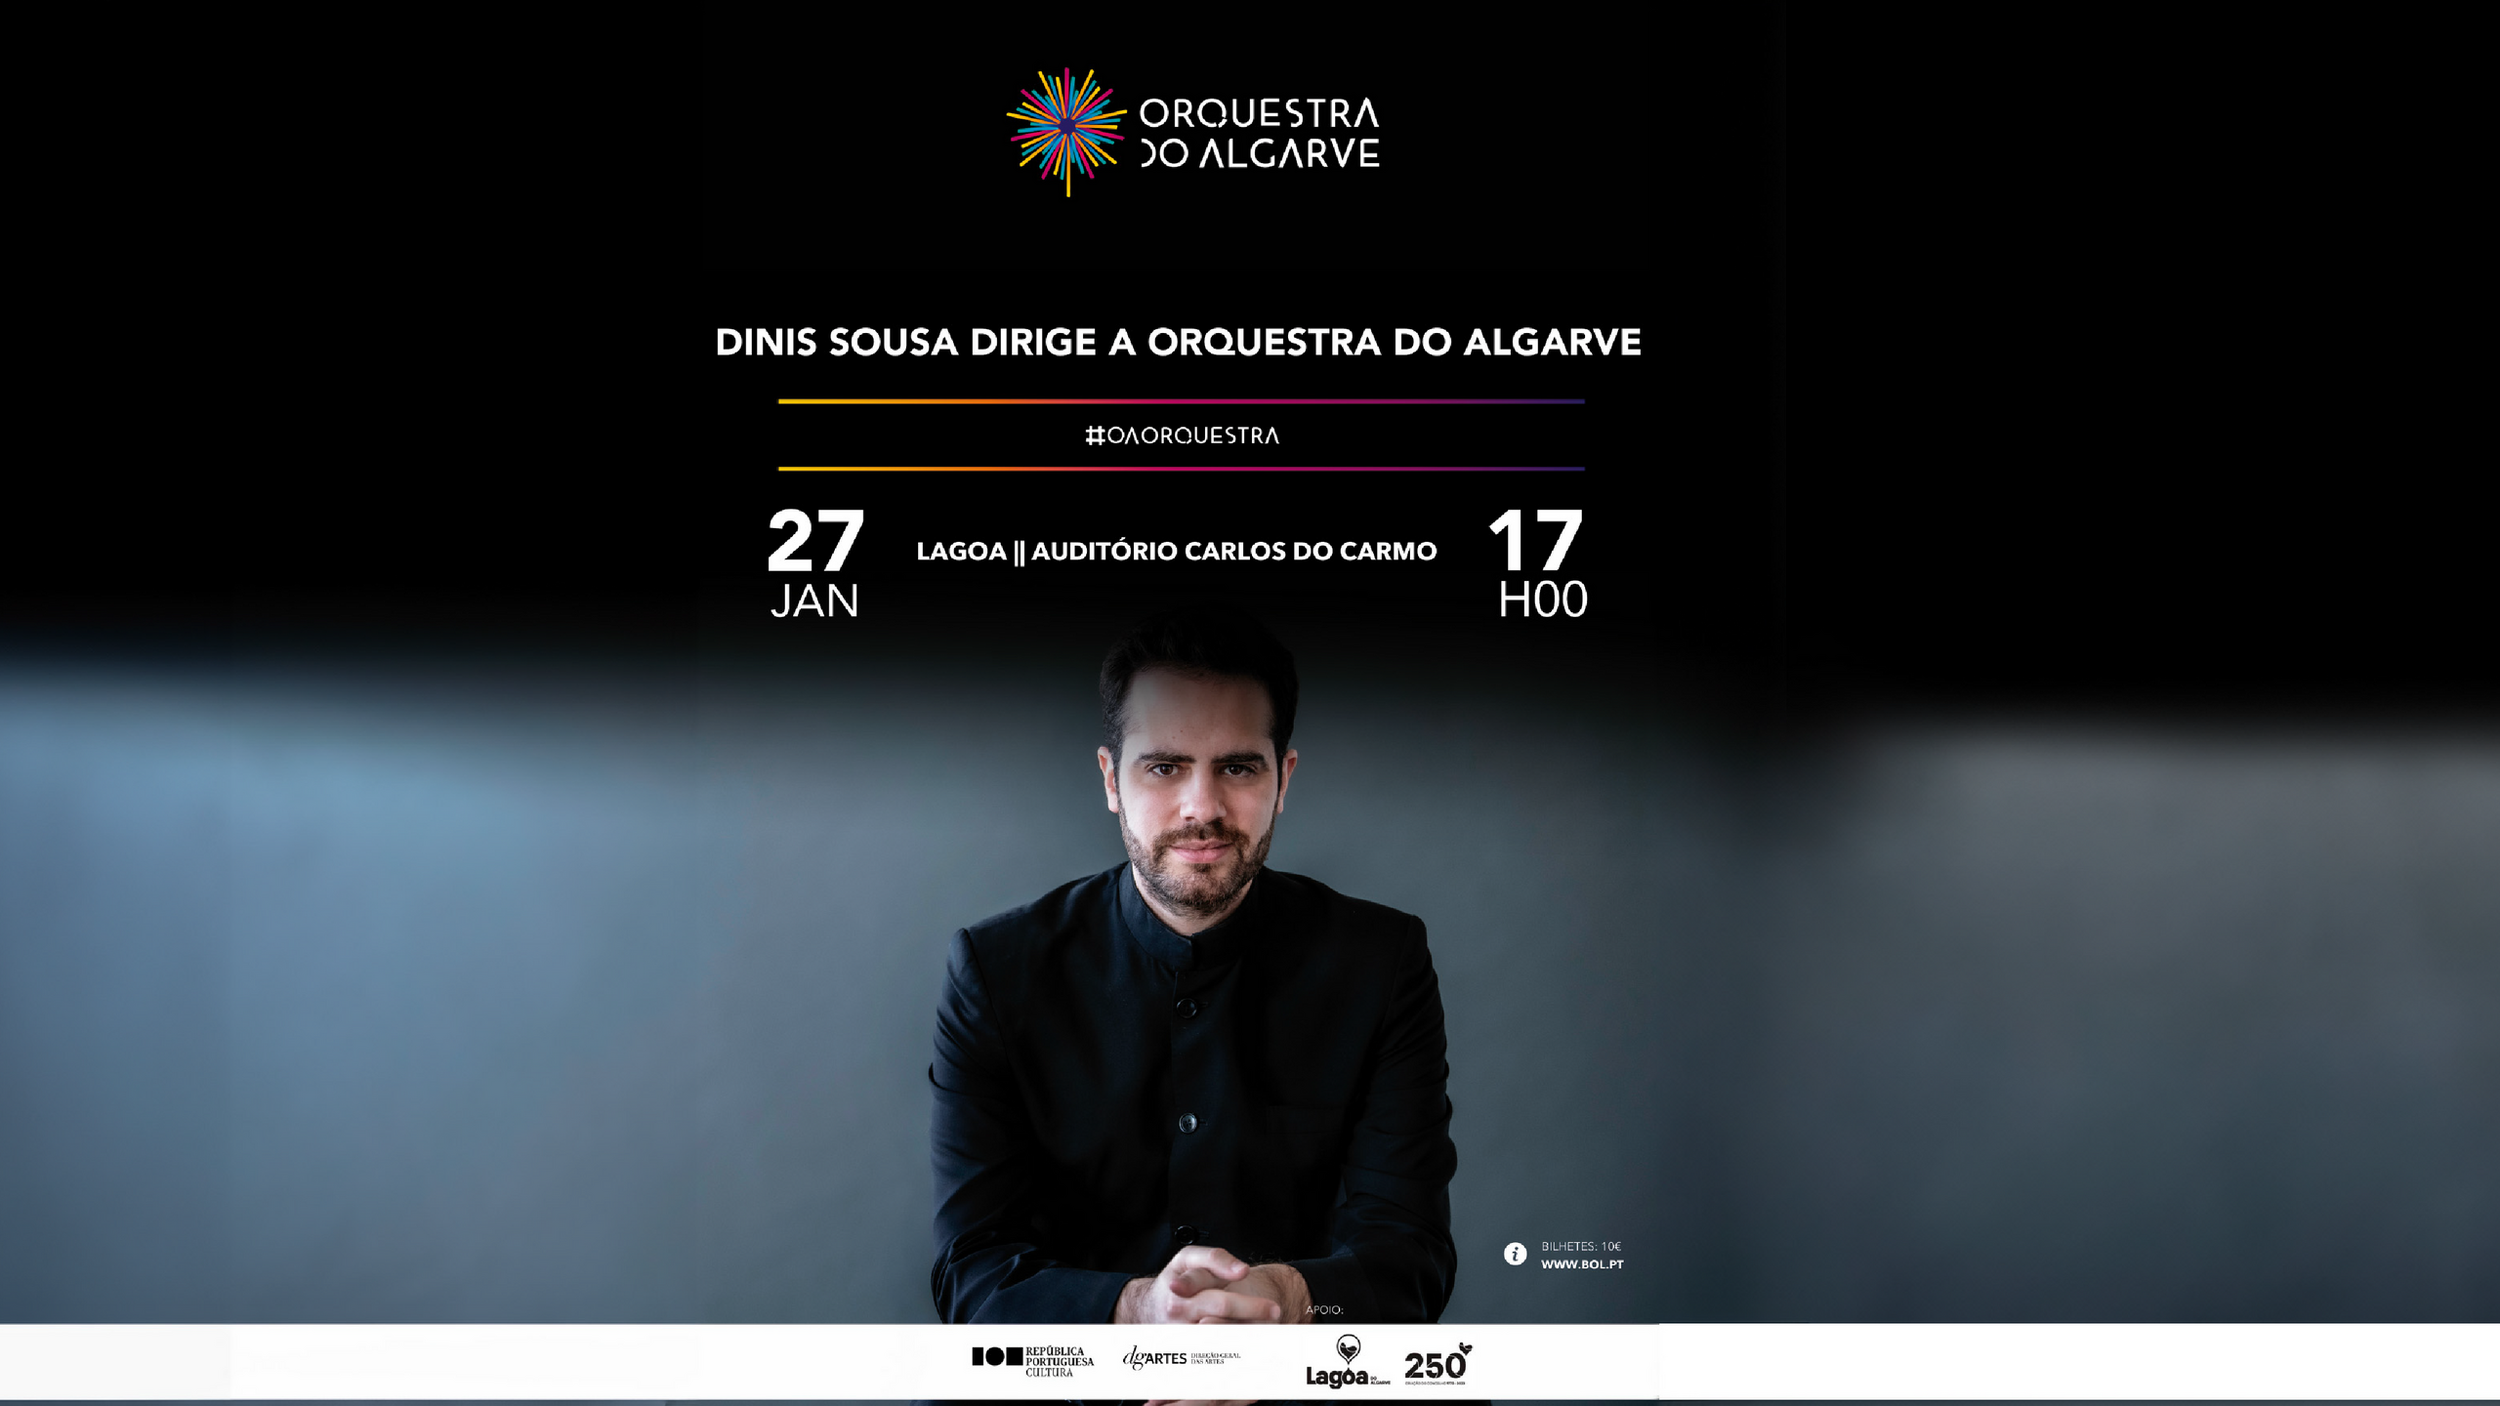 Dinis Sousa Dirige a Orquestra do Algarve